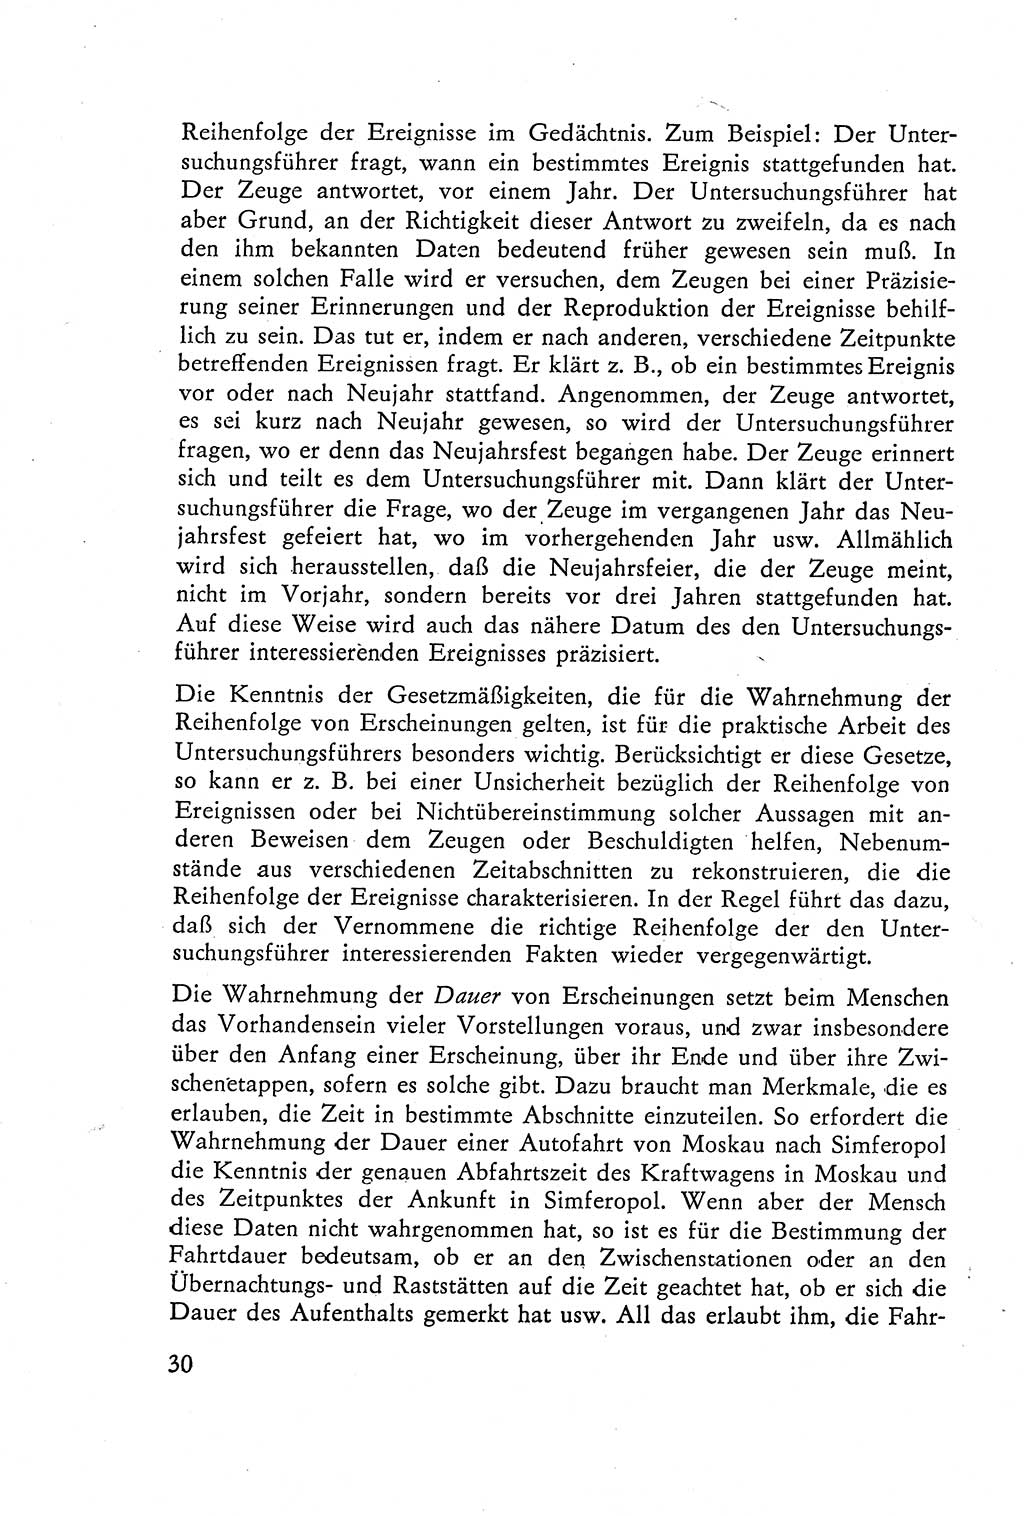 Die Vernehmung [Deutsche Demokratische Republik (DDR)] 1960, Seite 30 (Vern. DDR 1960, S. 30)